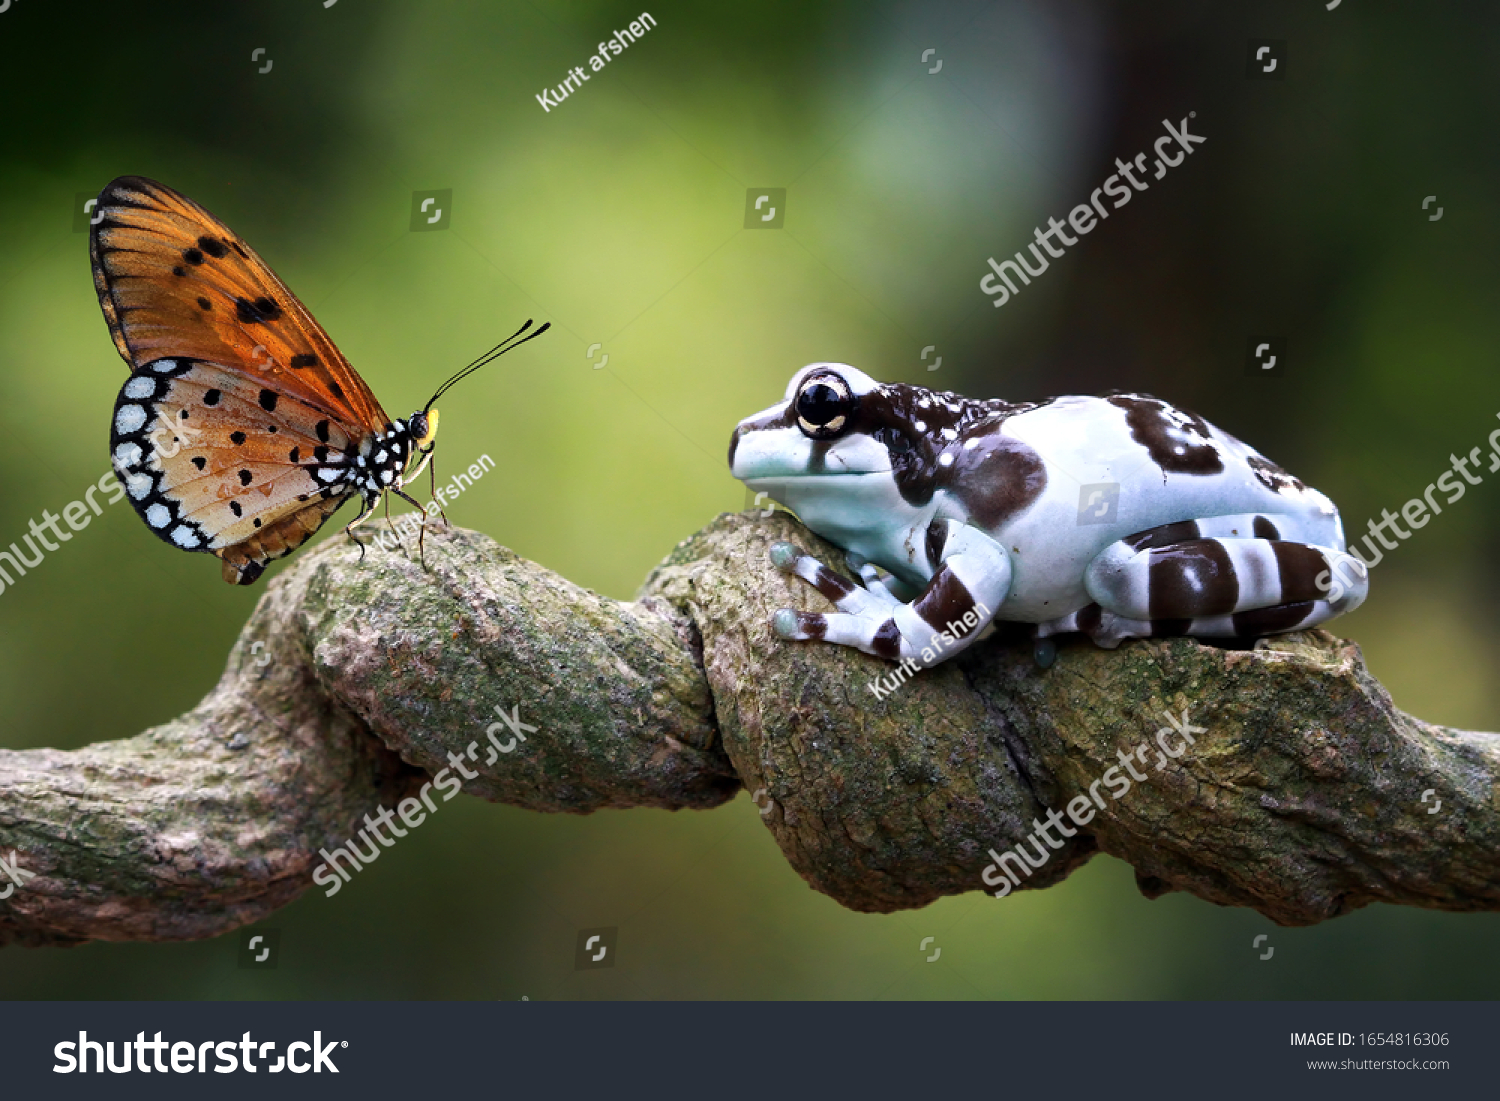 Amazon milk frog on branch, two amazon milk frog, panda tree frog, closeup tree frog #1654816306